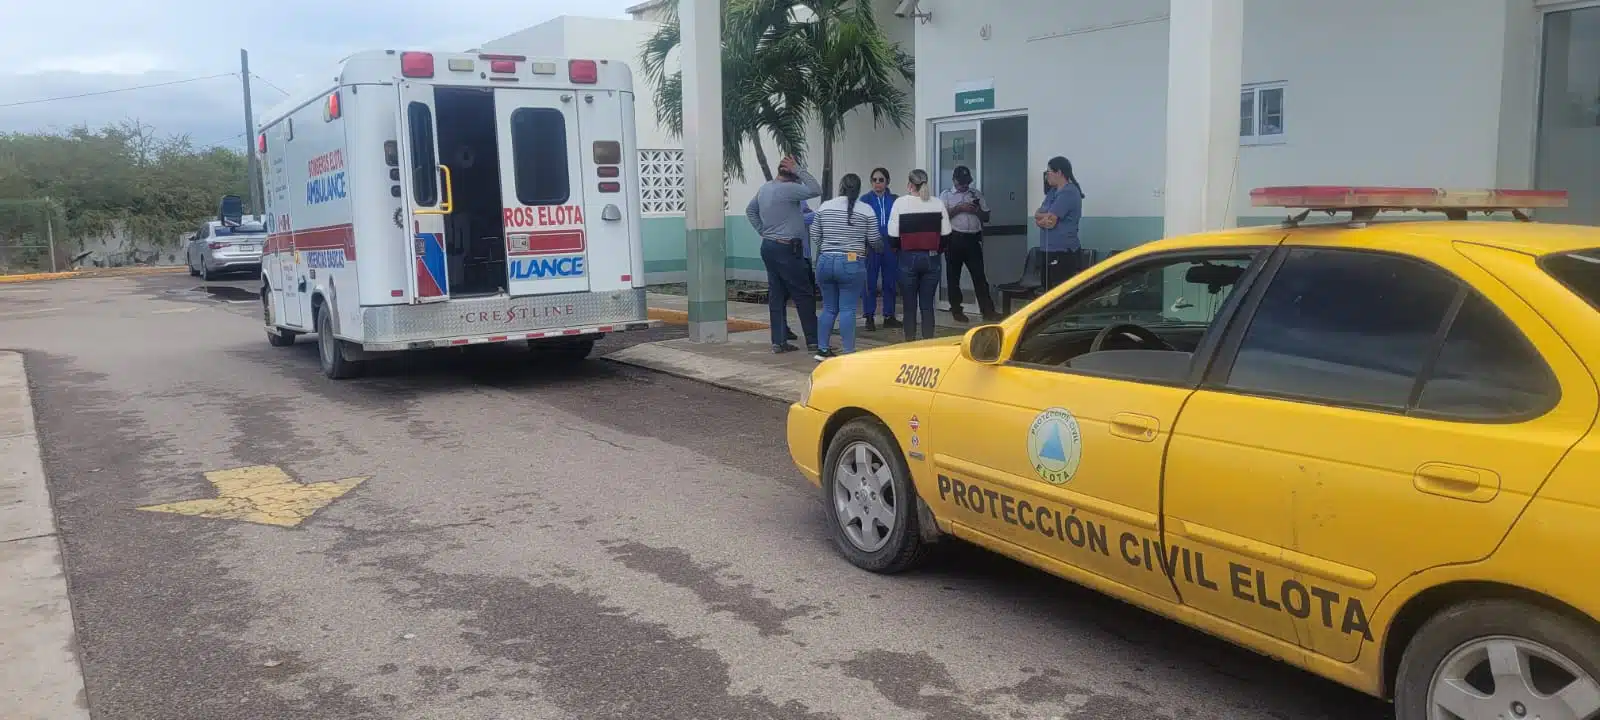 Paramédicos de Bomberos Voluntarios y elementos de Protección Civil de Elota acudieron al lugar del accidente.